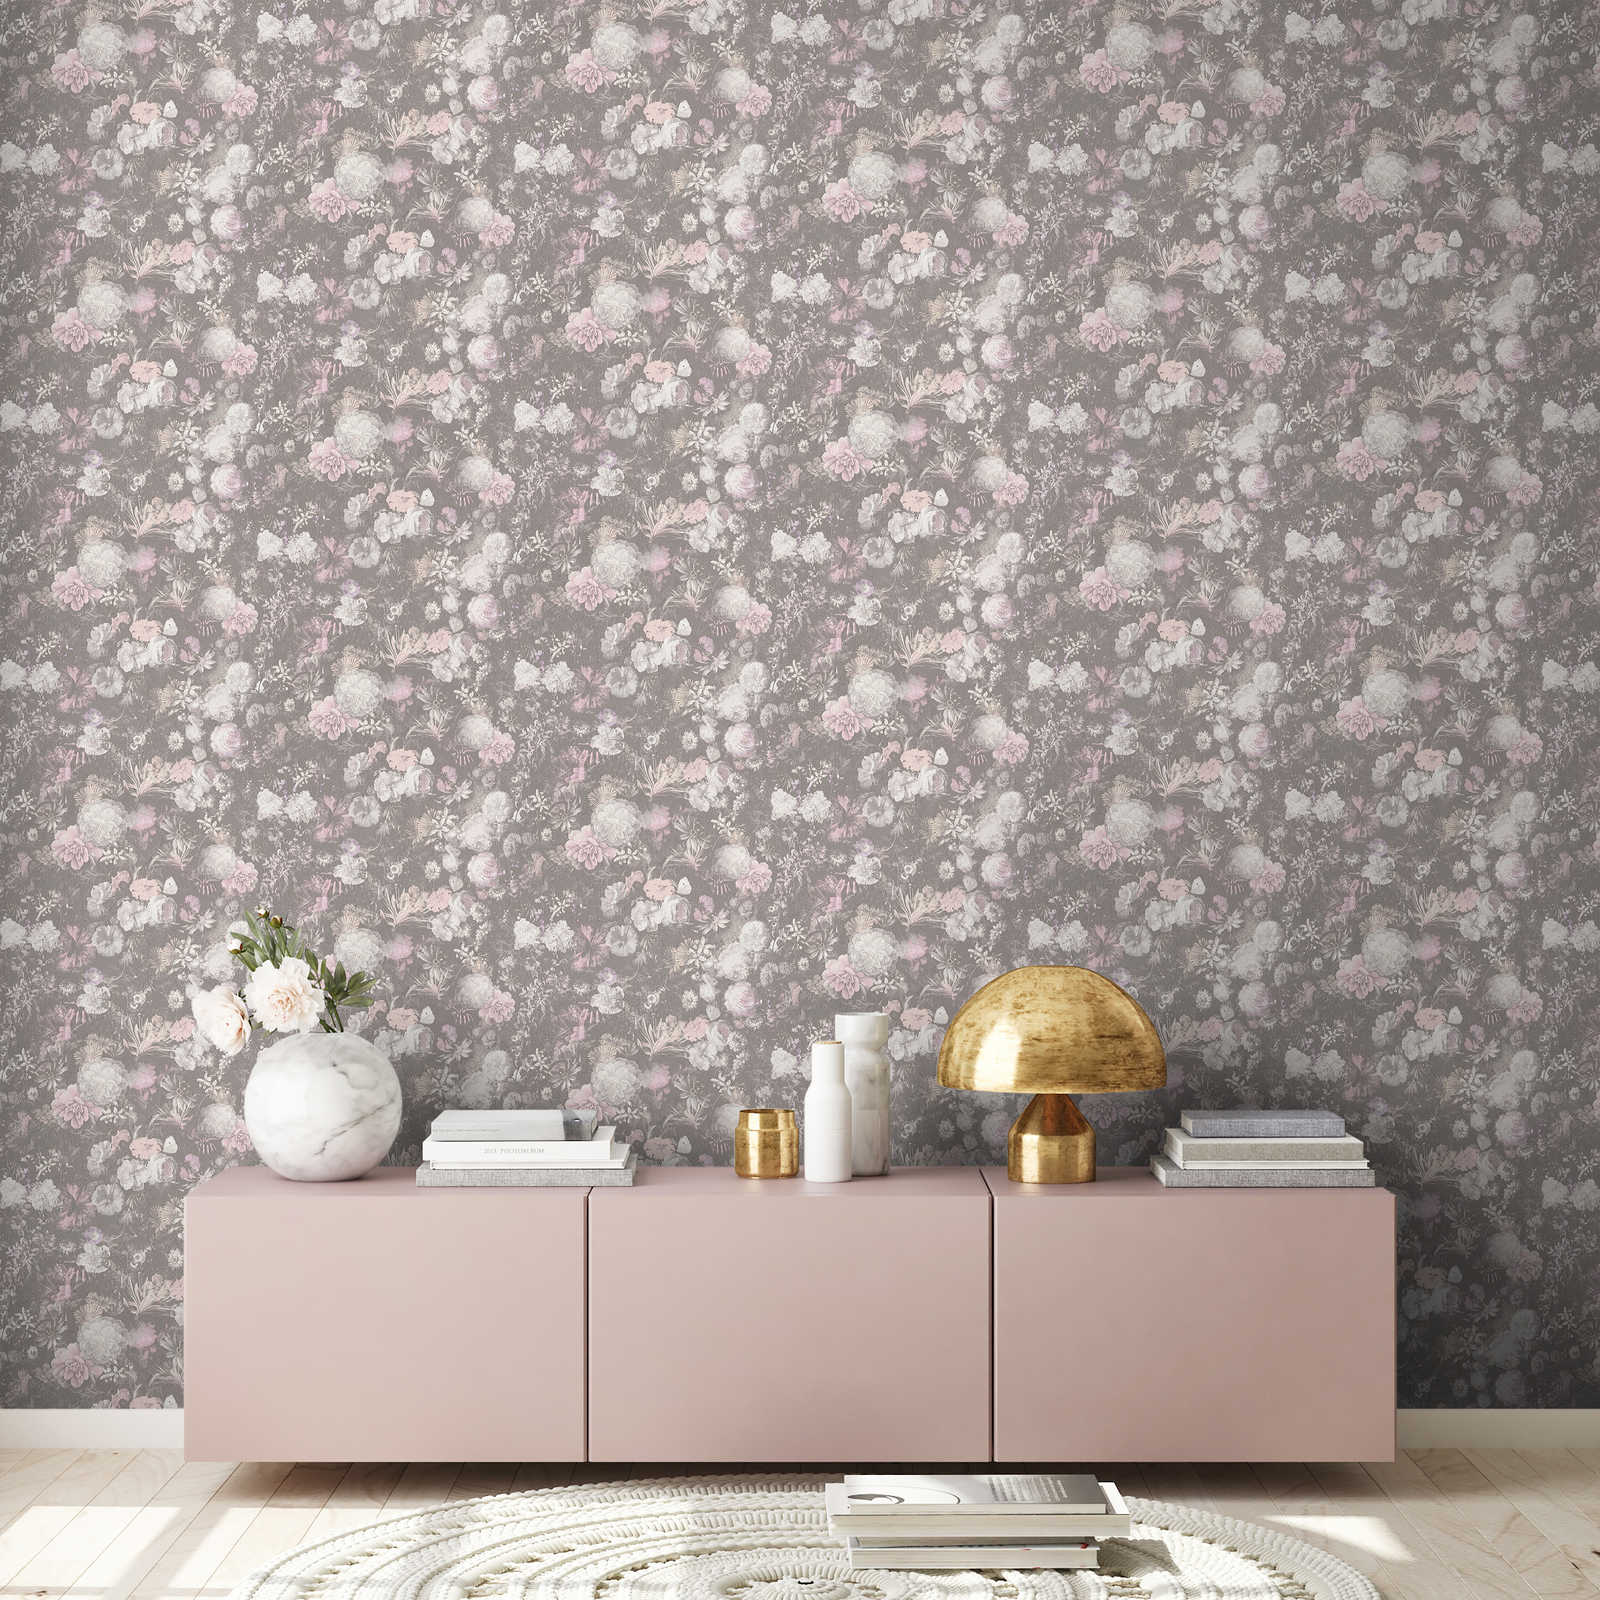             Papier peint fleuri rose et gris au design vintage
        